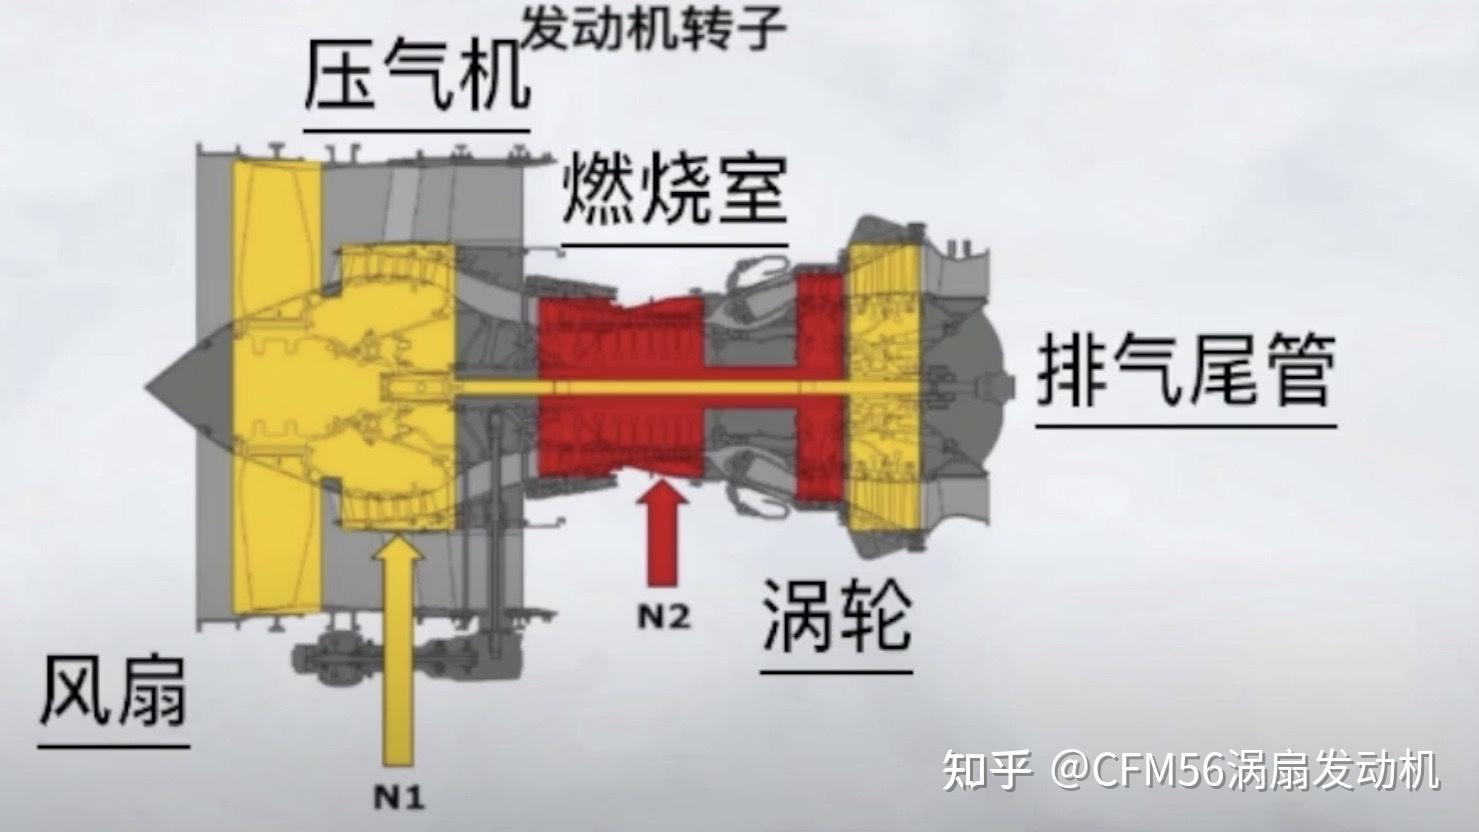 双转子轴流式涡轮风扇发动机简称"涡扇发动机,7815"双转子"表示